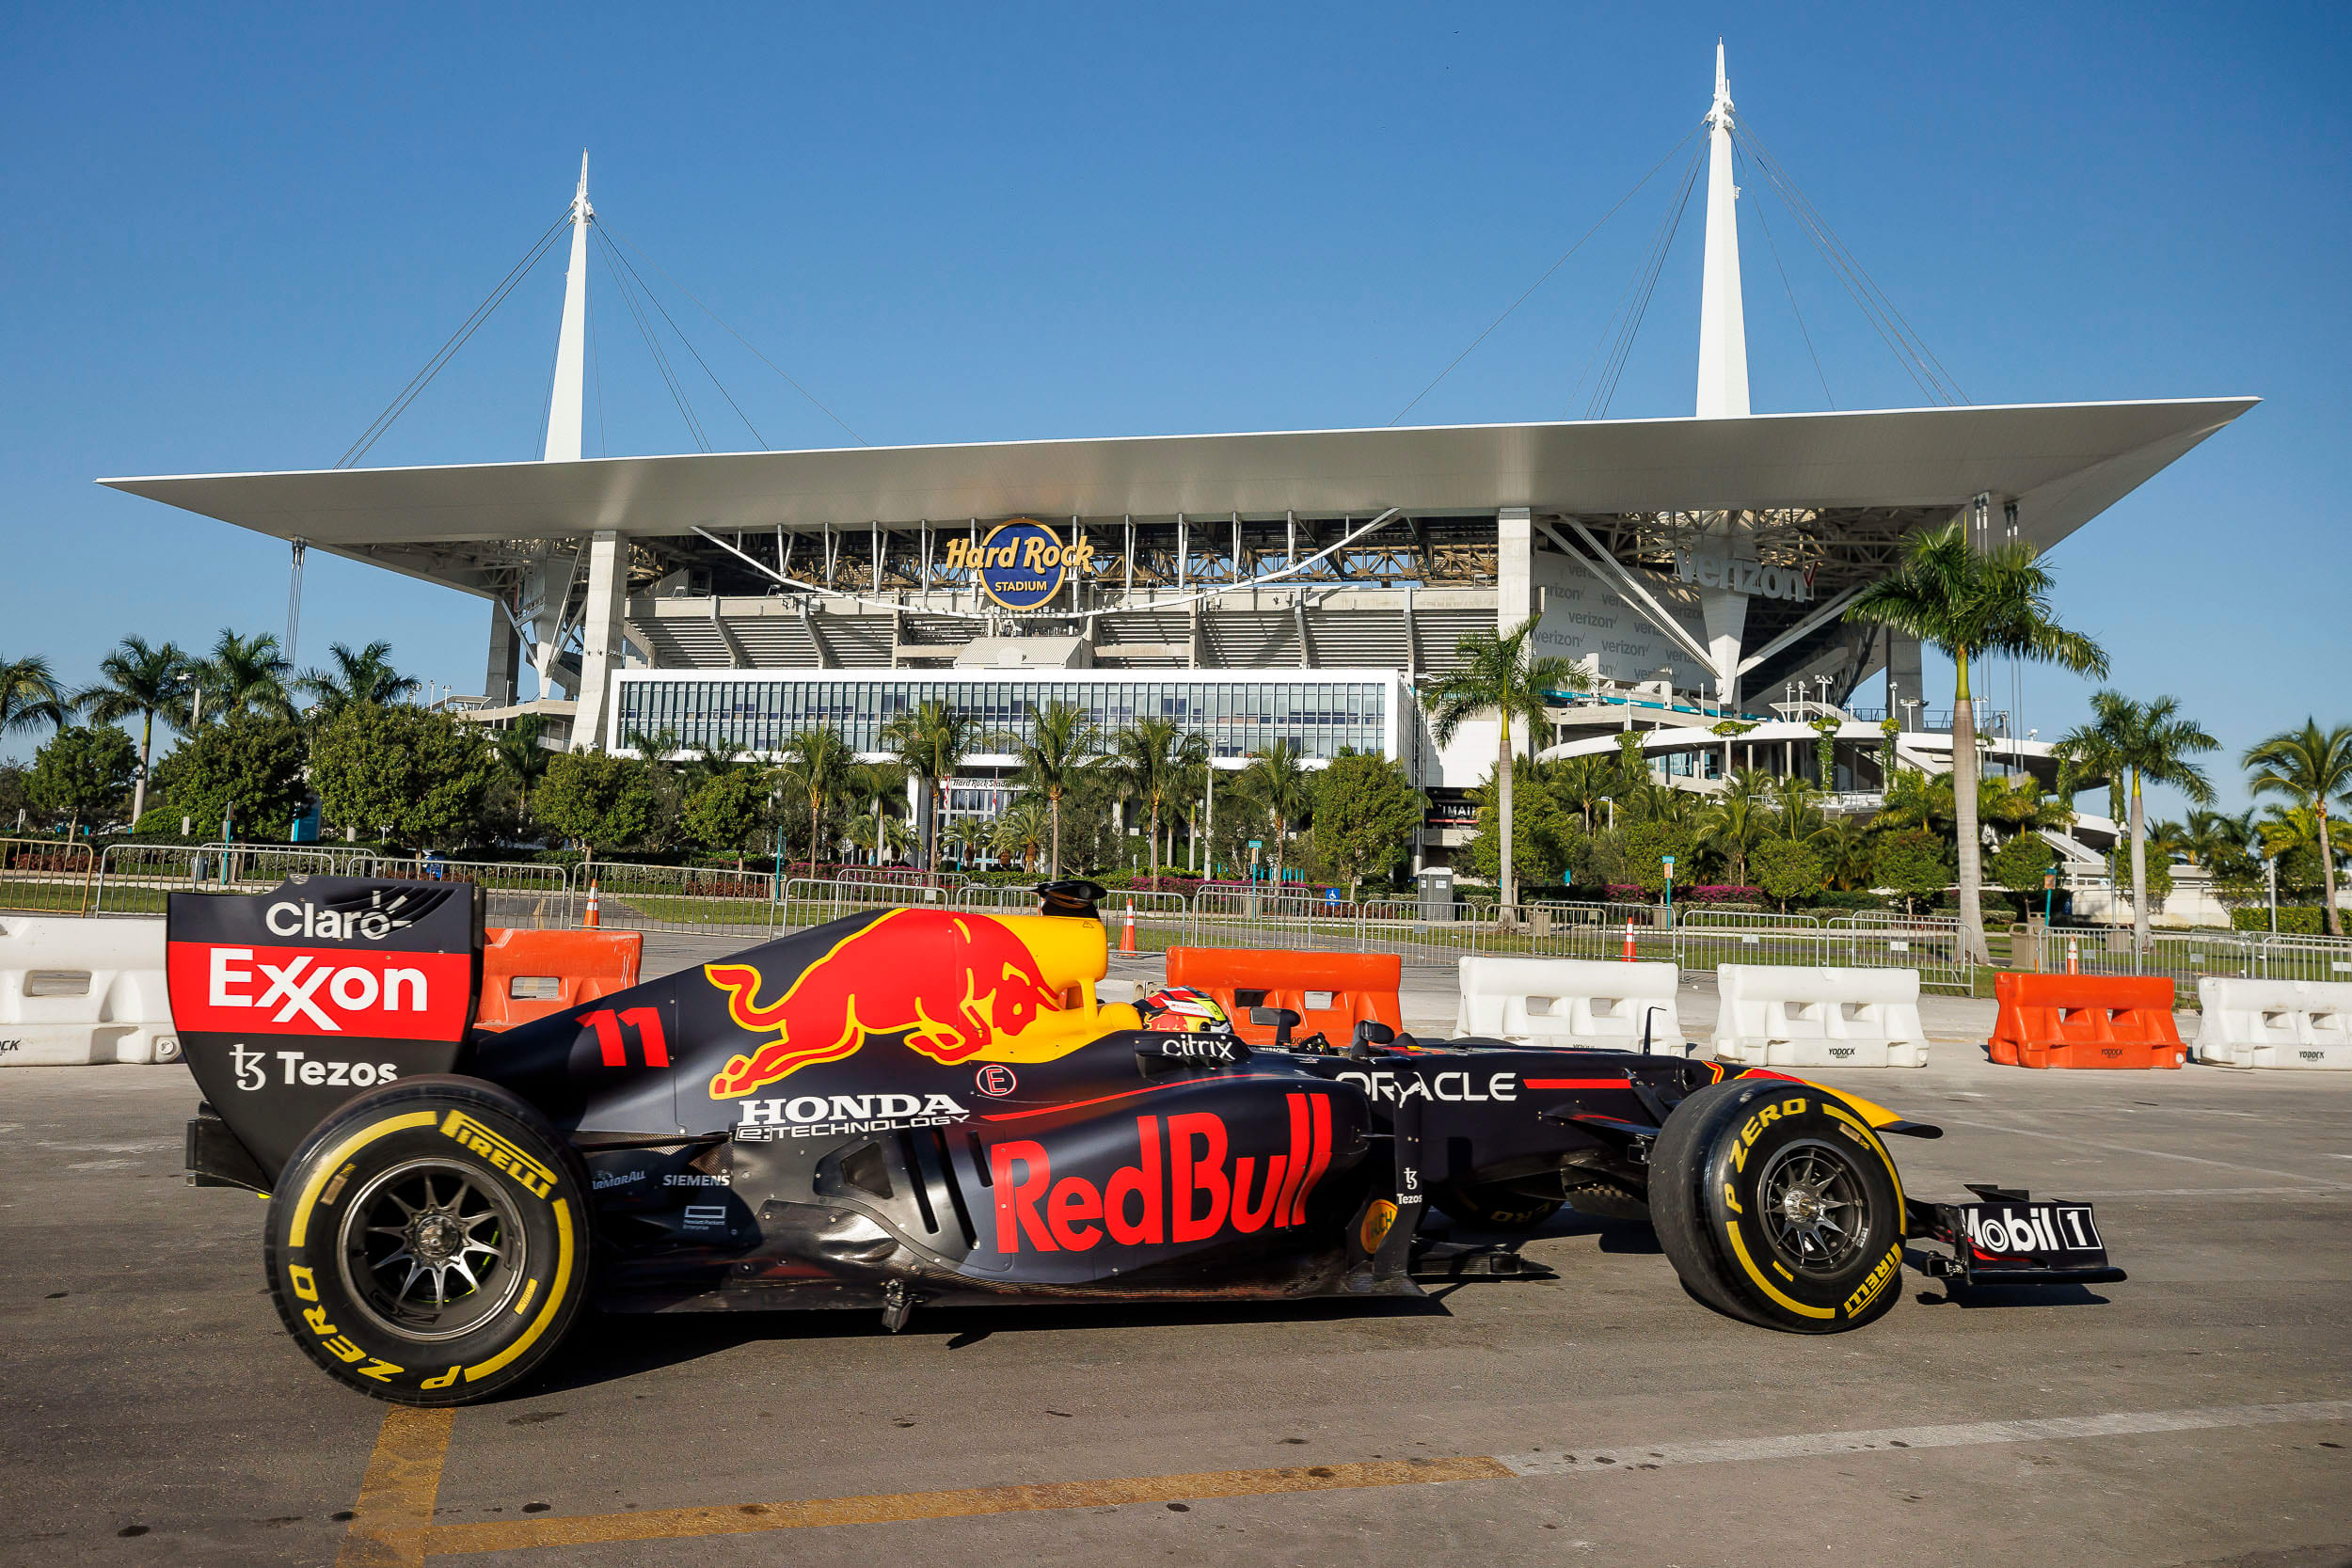 arve Reorganisere Oxide F1 Driver Sergio Perez Races to the Miami Grand Prix